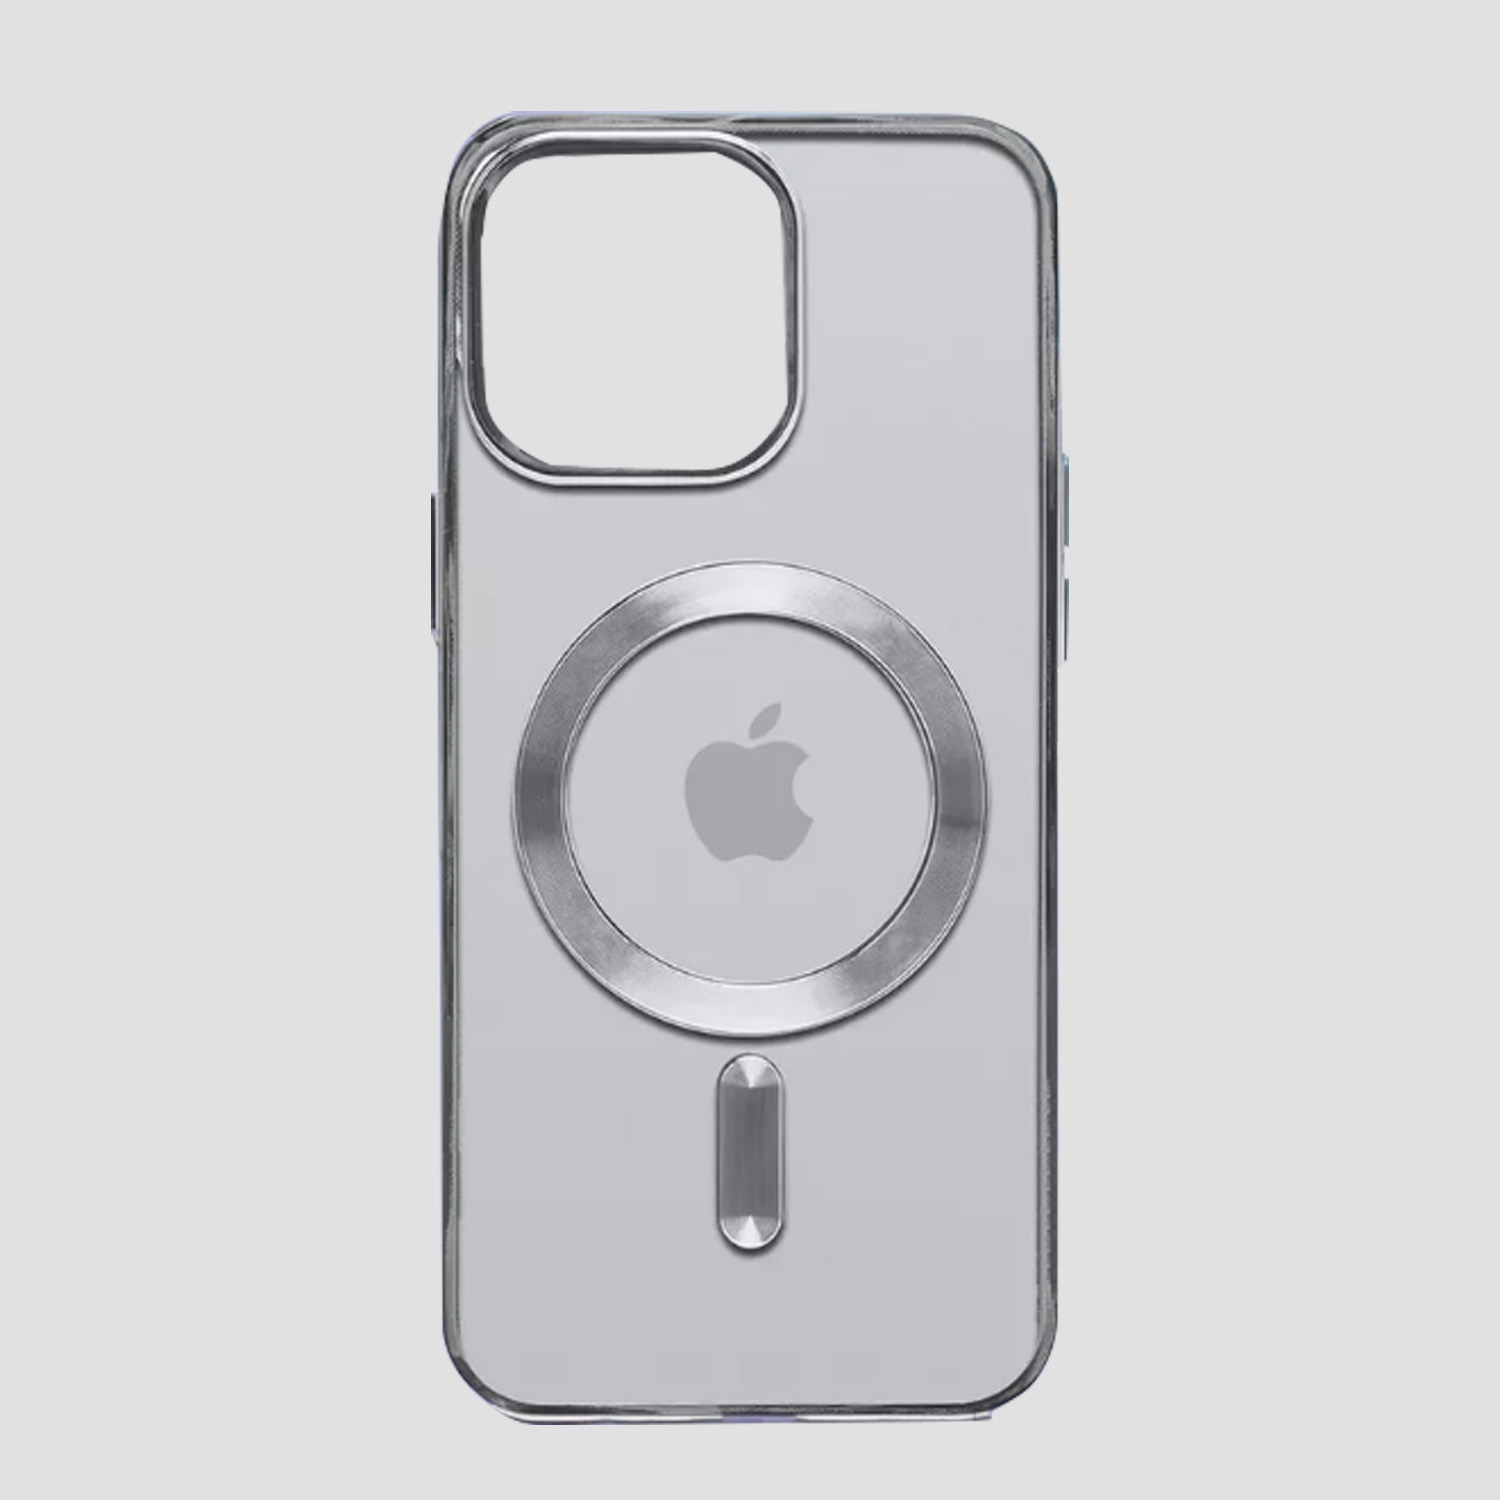 Чехол прозрачный силиконовый для Apple iPhone 14, iPhone 13 с MagSafe (серебристый)